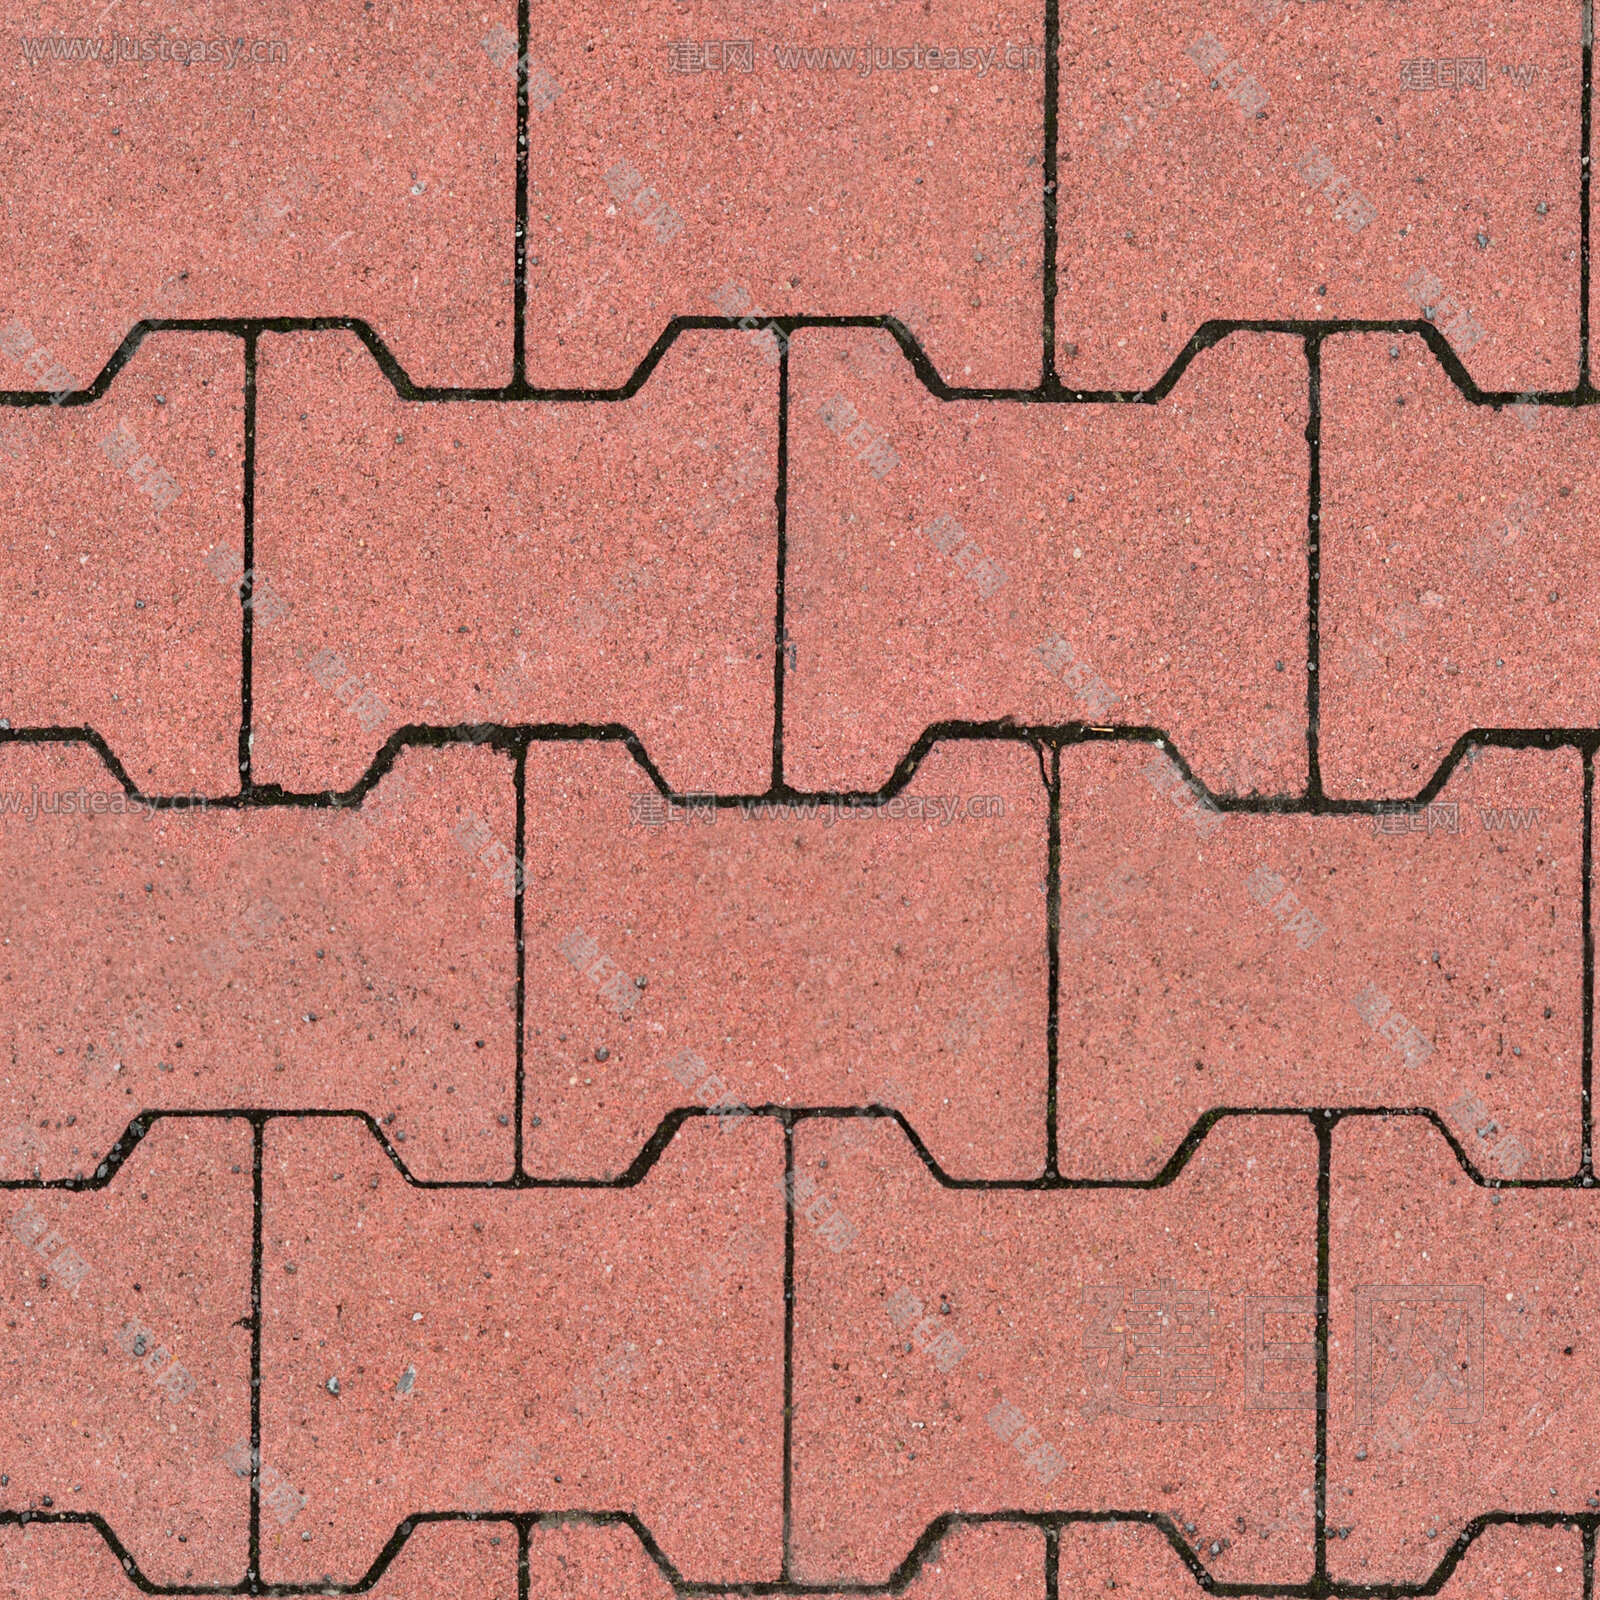 地砖材质有哪些?多少钱一平米?装修网品牌介绍 - 地板 - 装一网